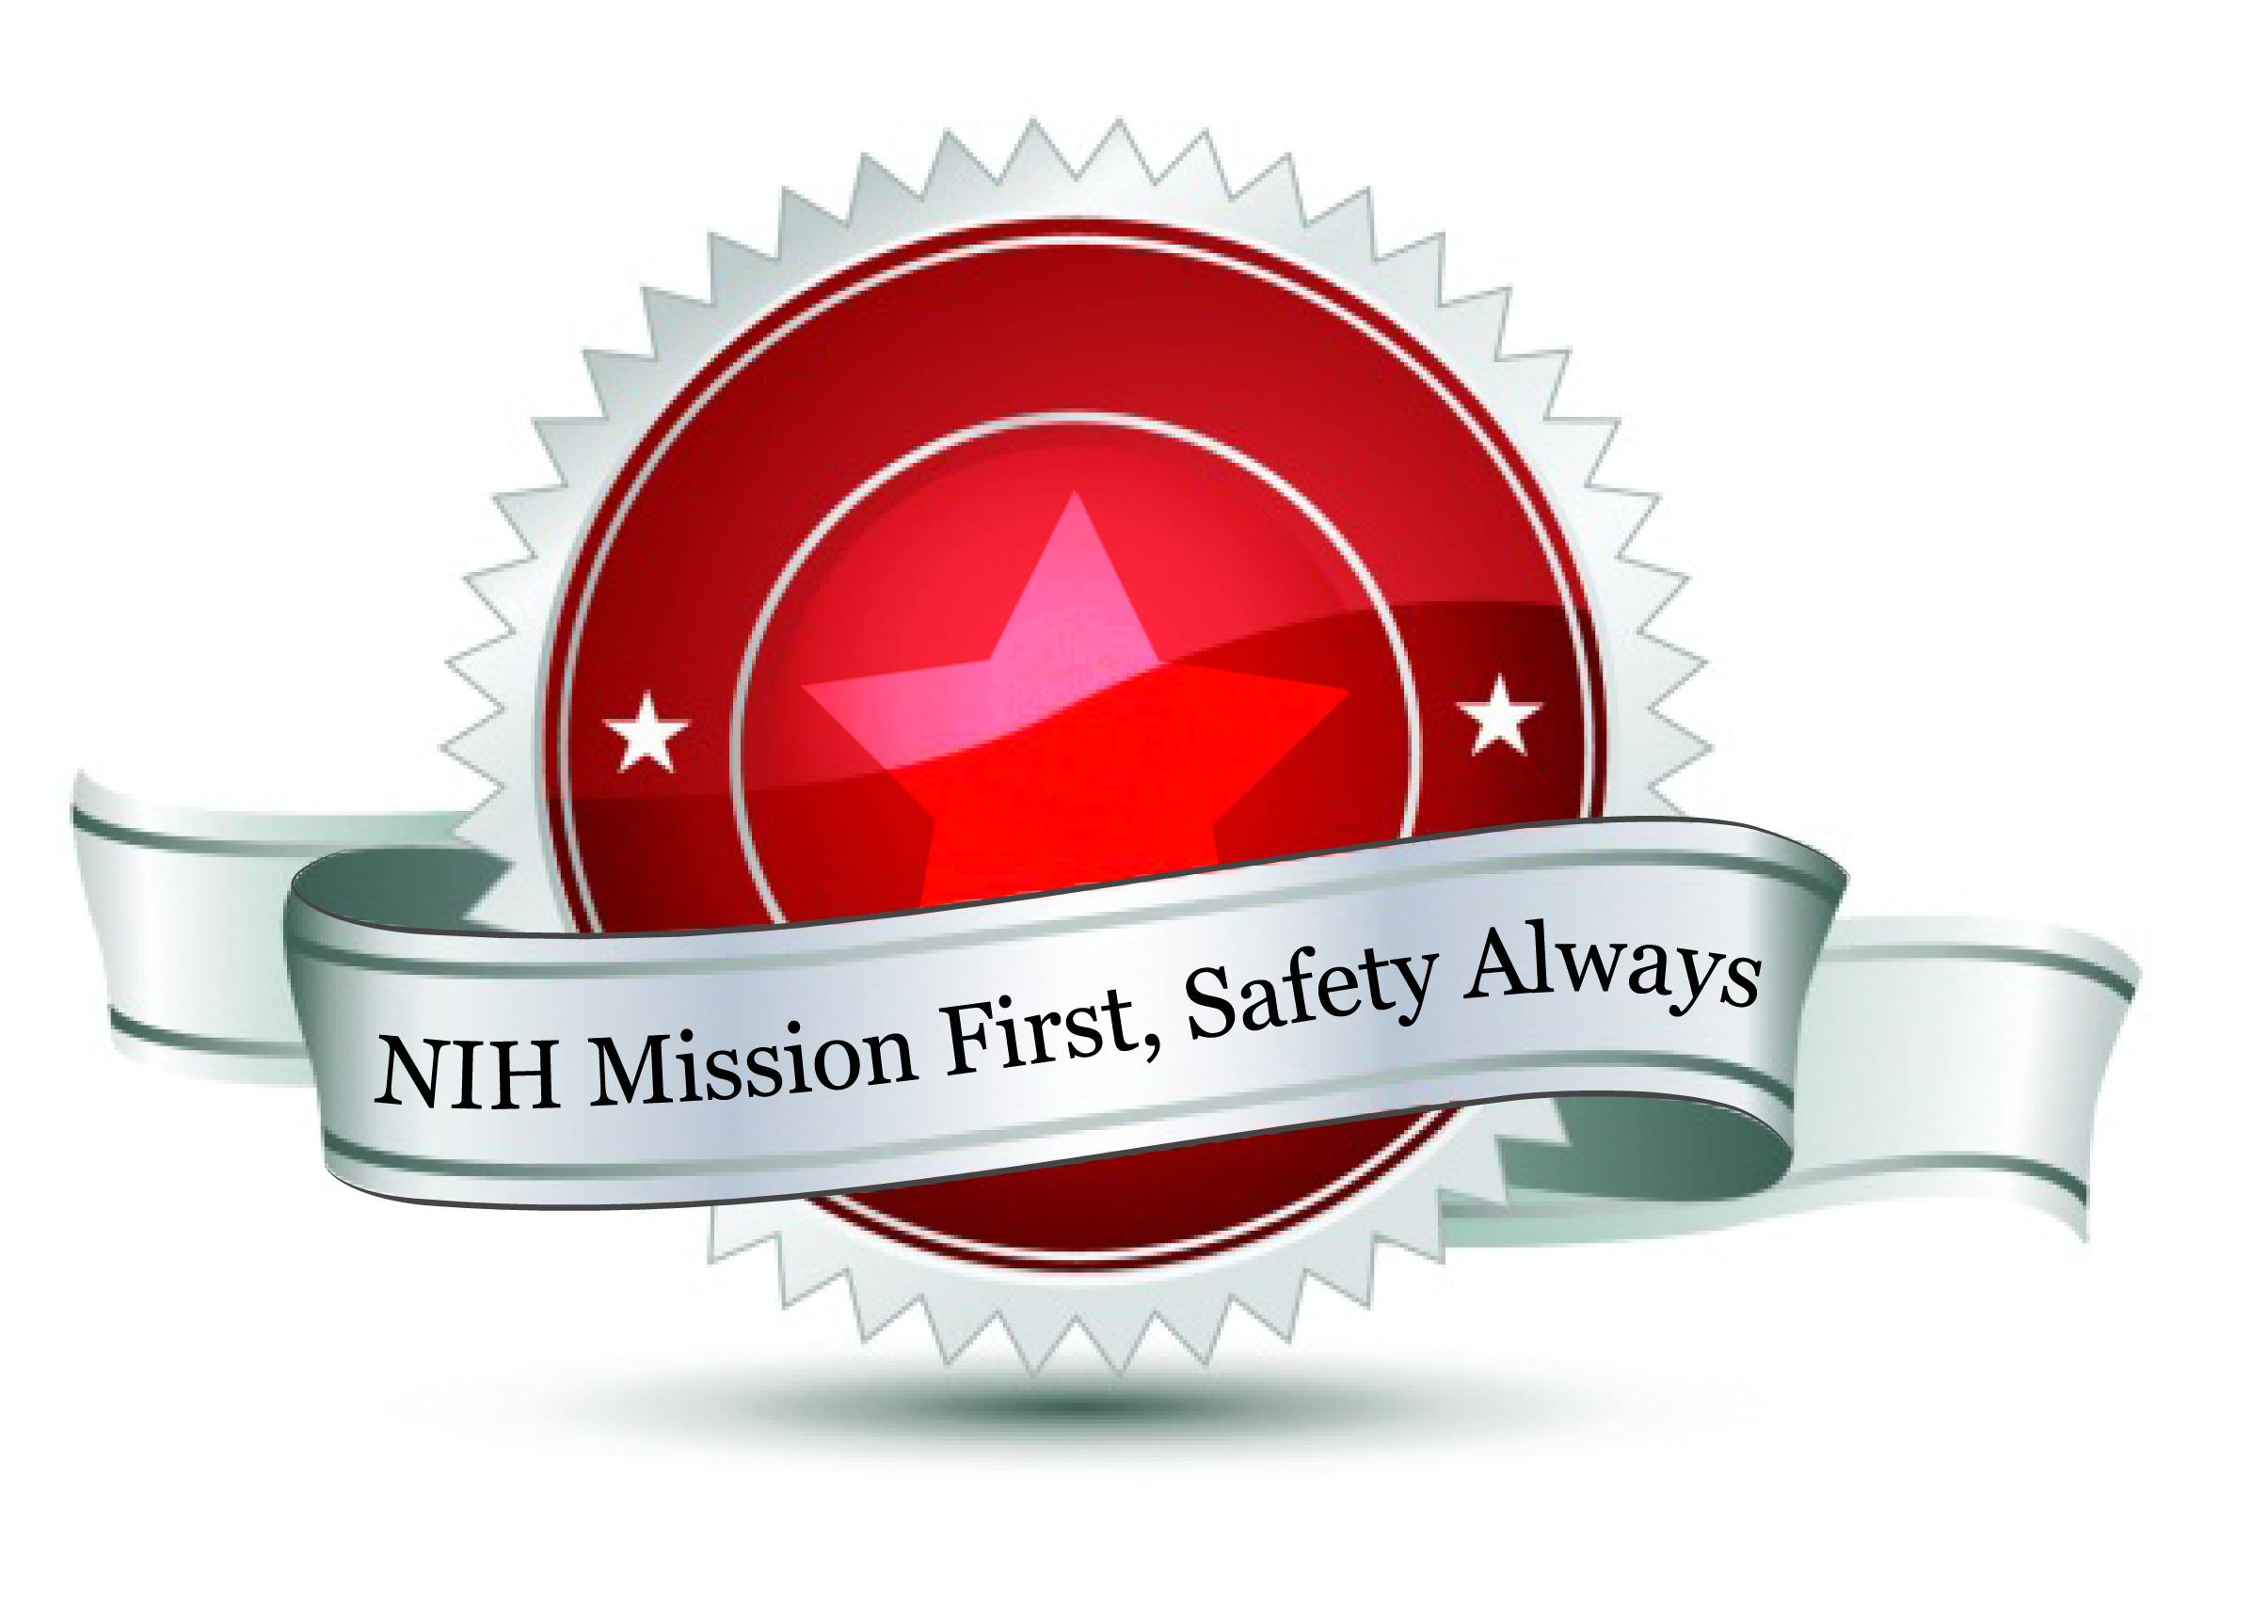 NIH Mission First, Safety Always Emblem